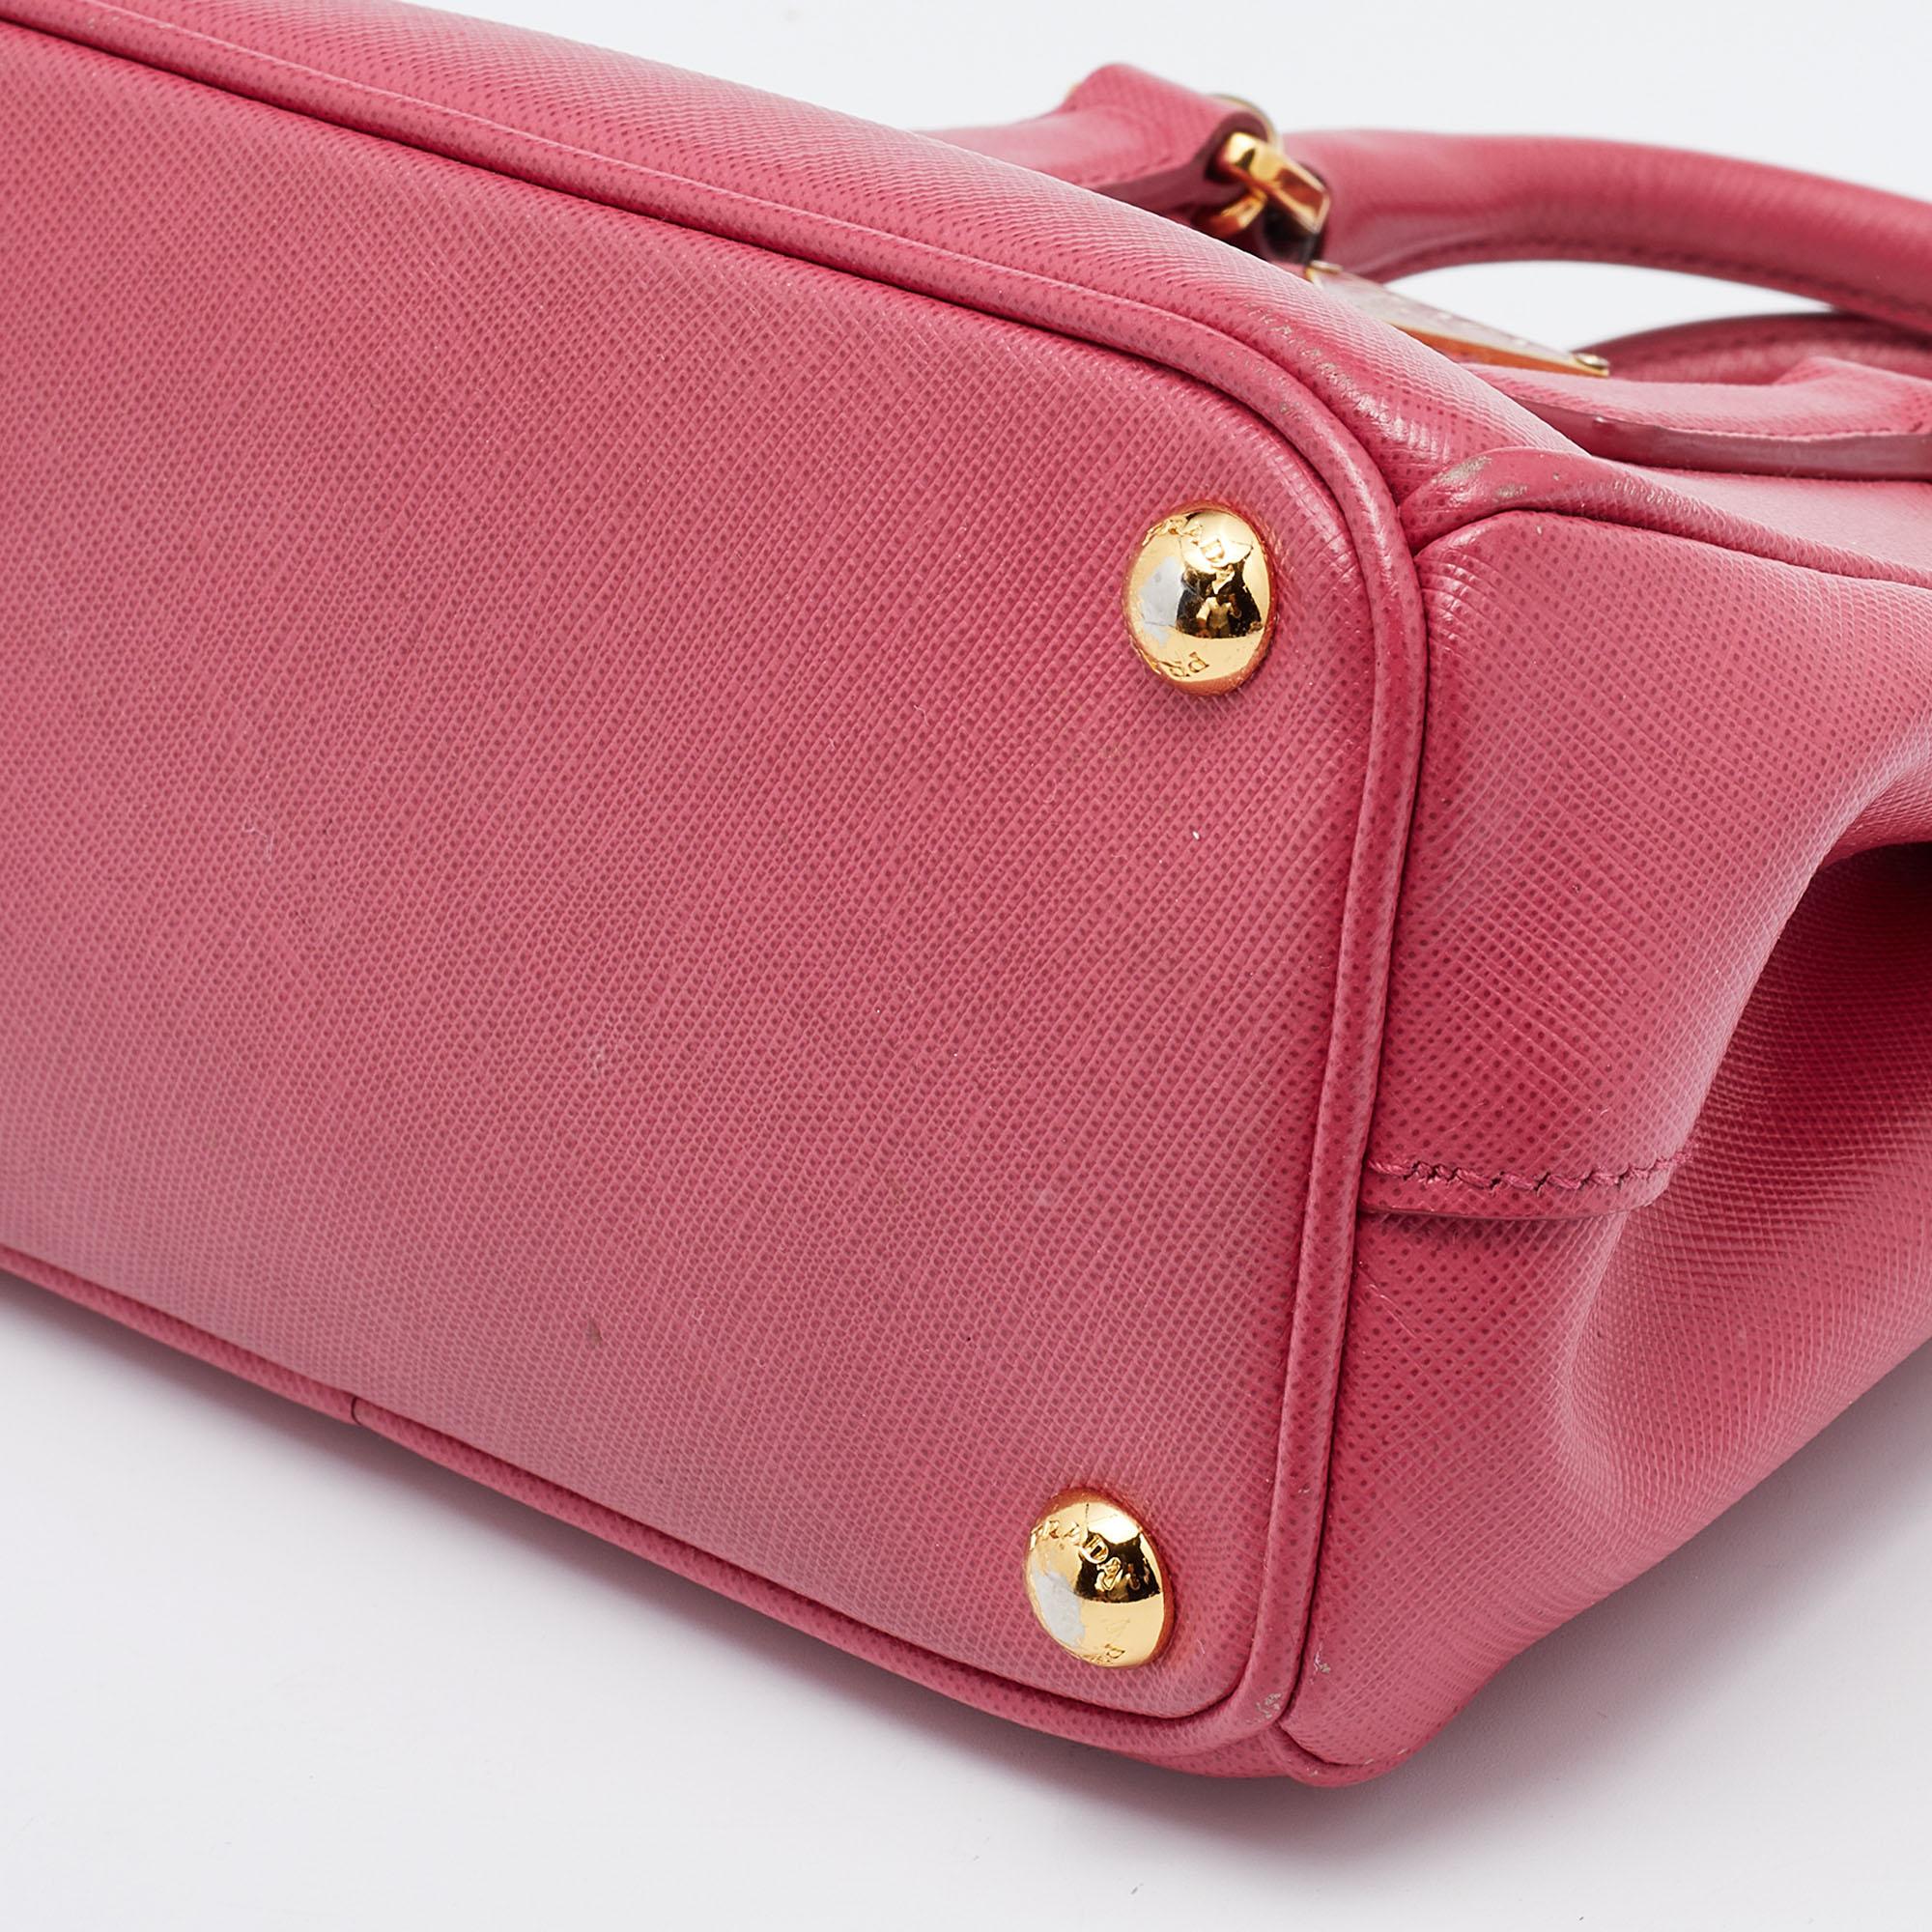 Prada Pink Saffiano Leather Micro Galleria Tote 5